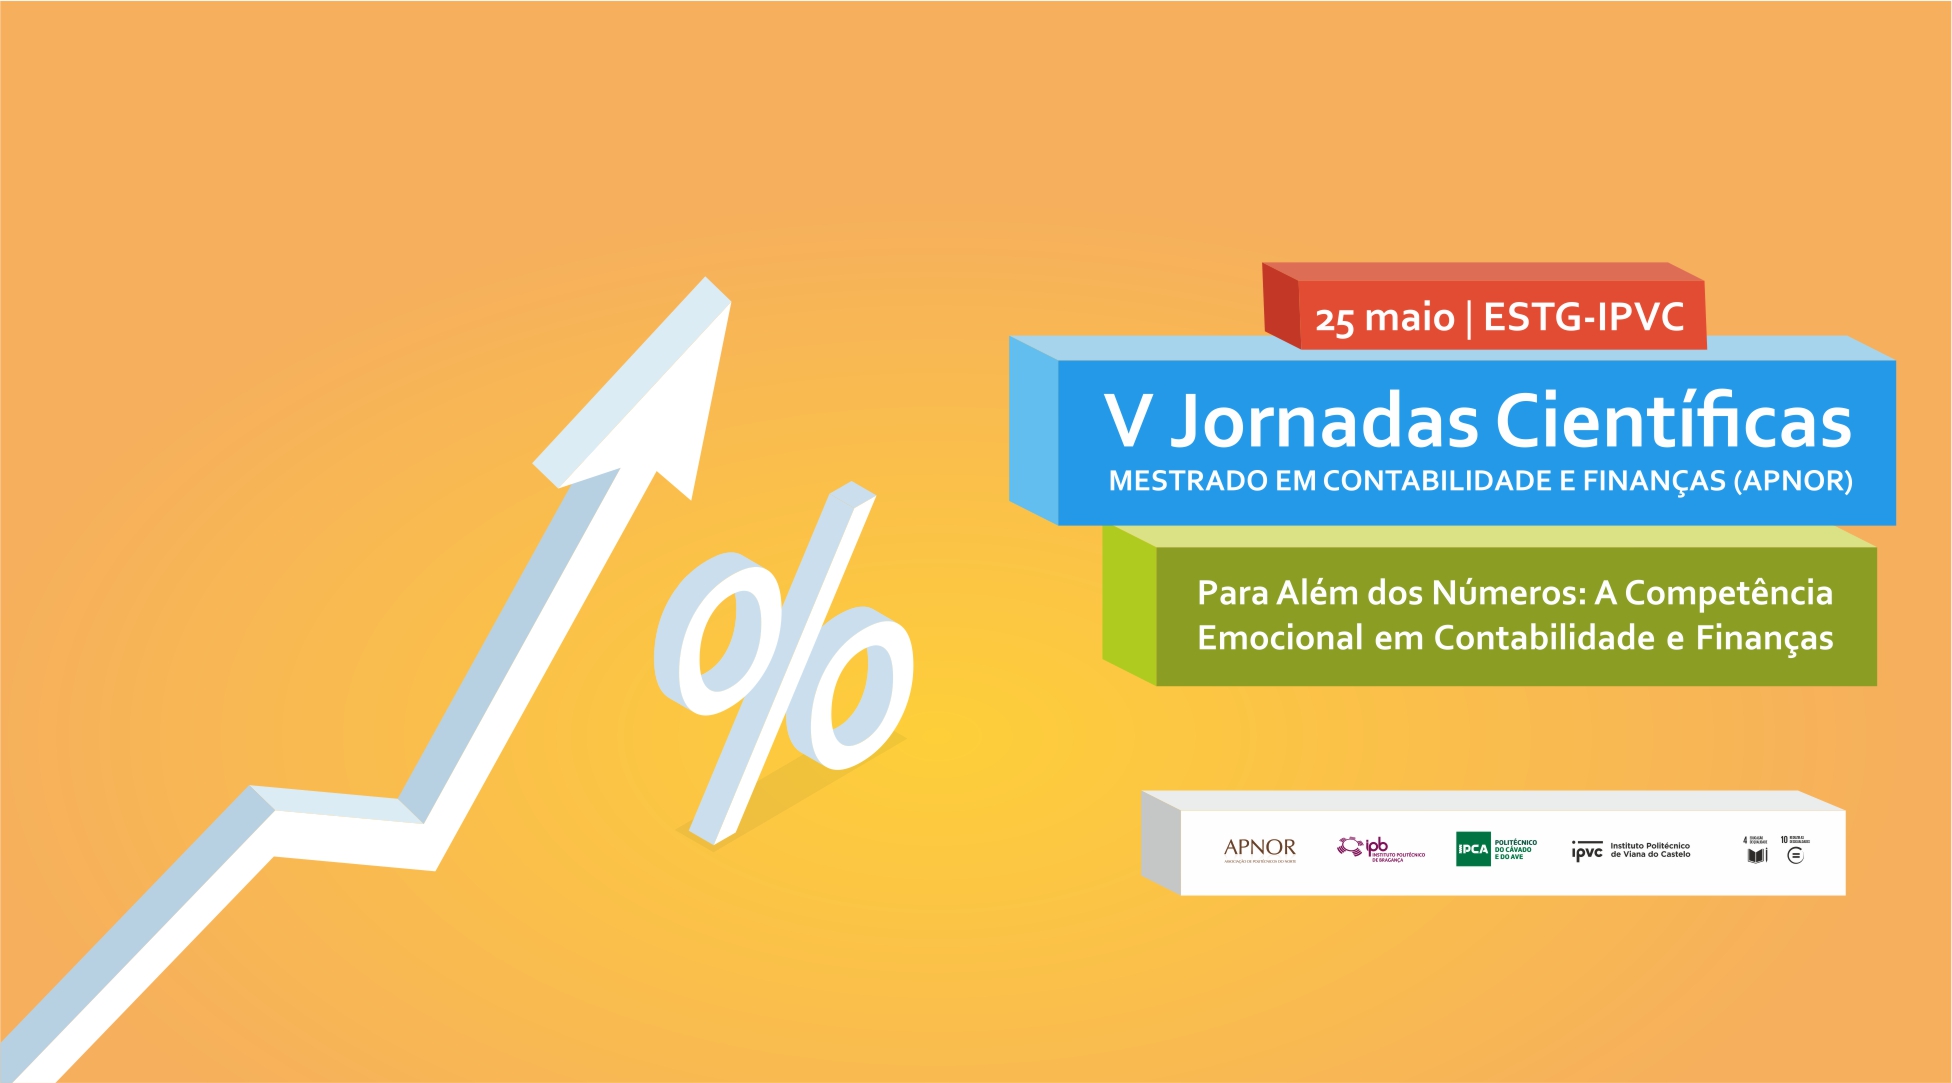 (Português) V Jornadas de Contabilidade e Finanças